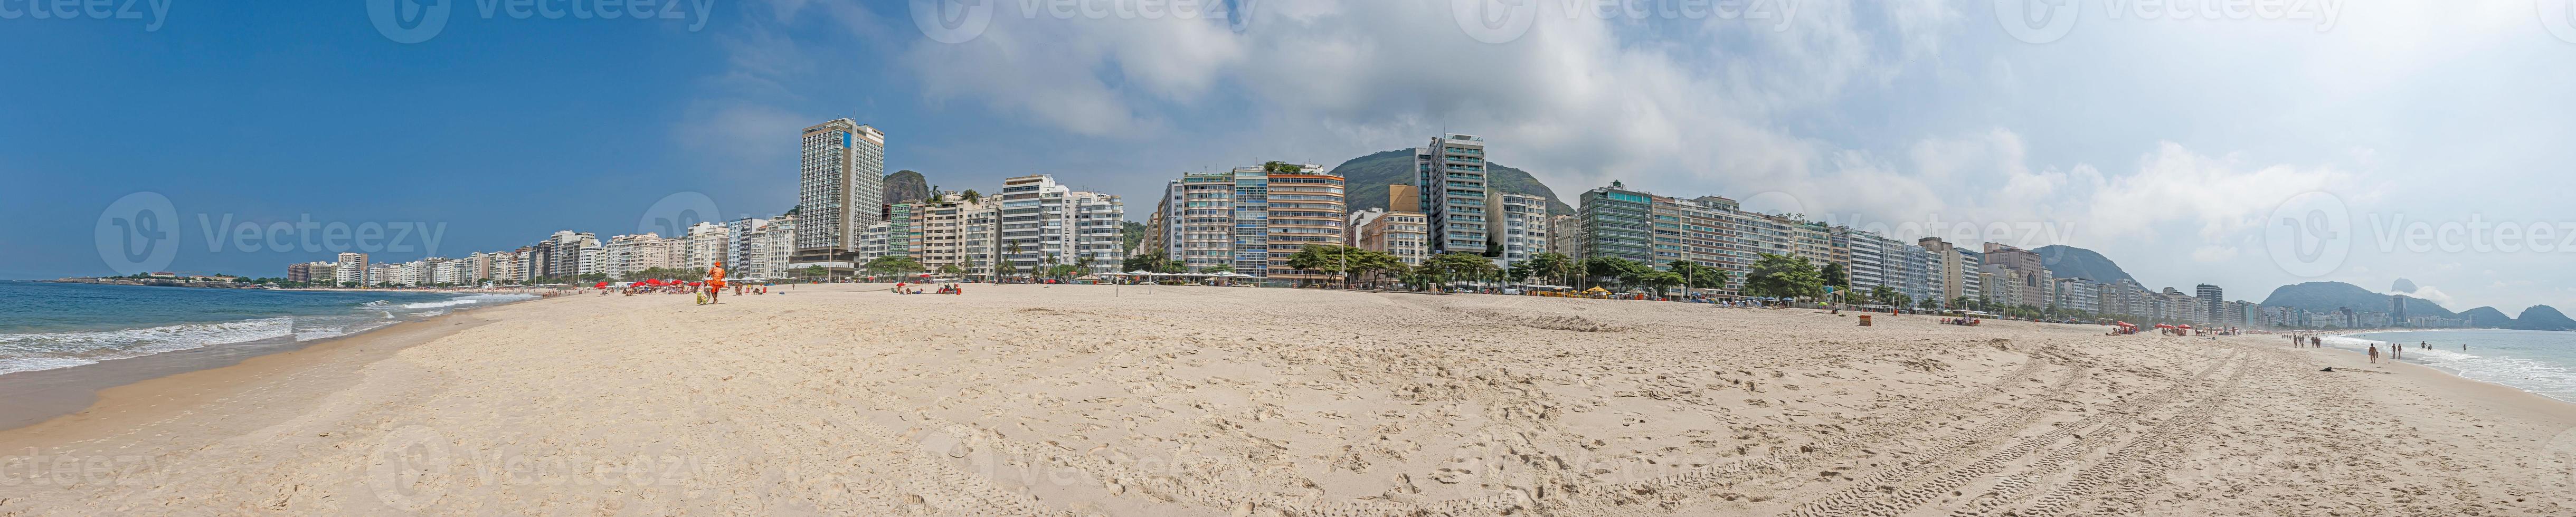 panoramisch beeld van huis voorkant langs Copacabana in Rio de Janeiro gedurende dag foto